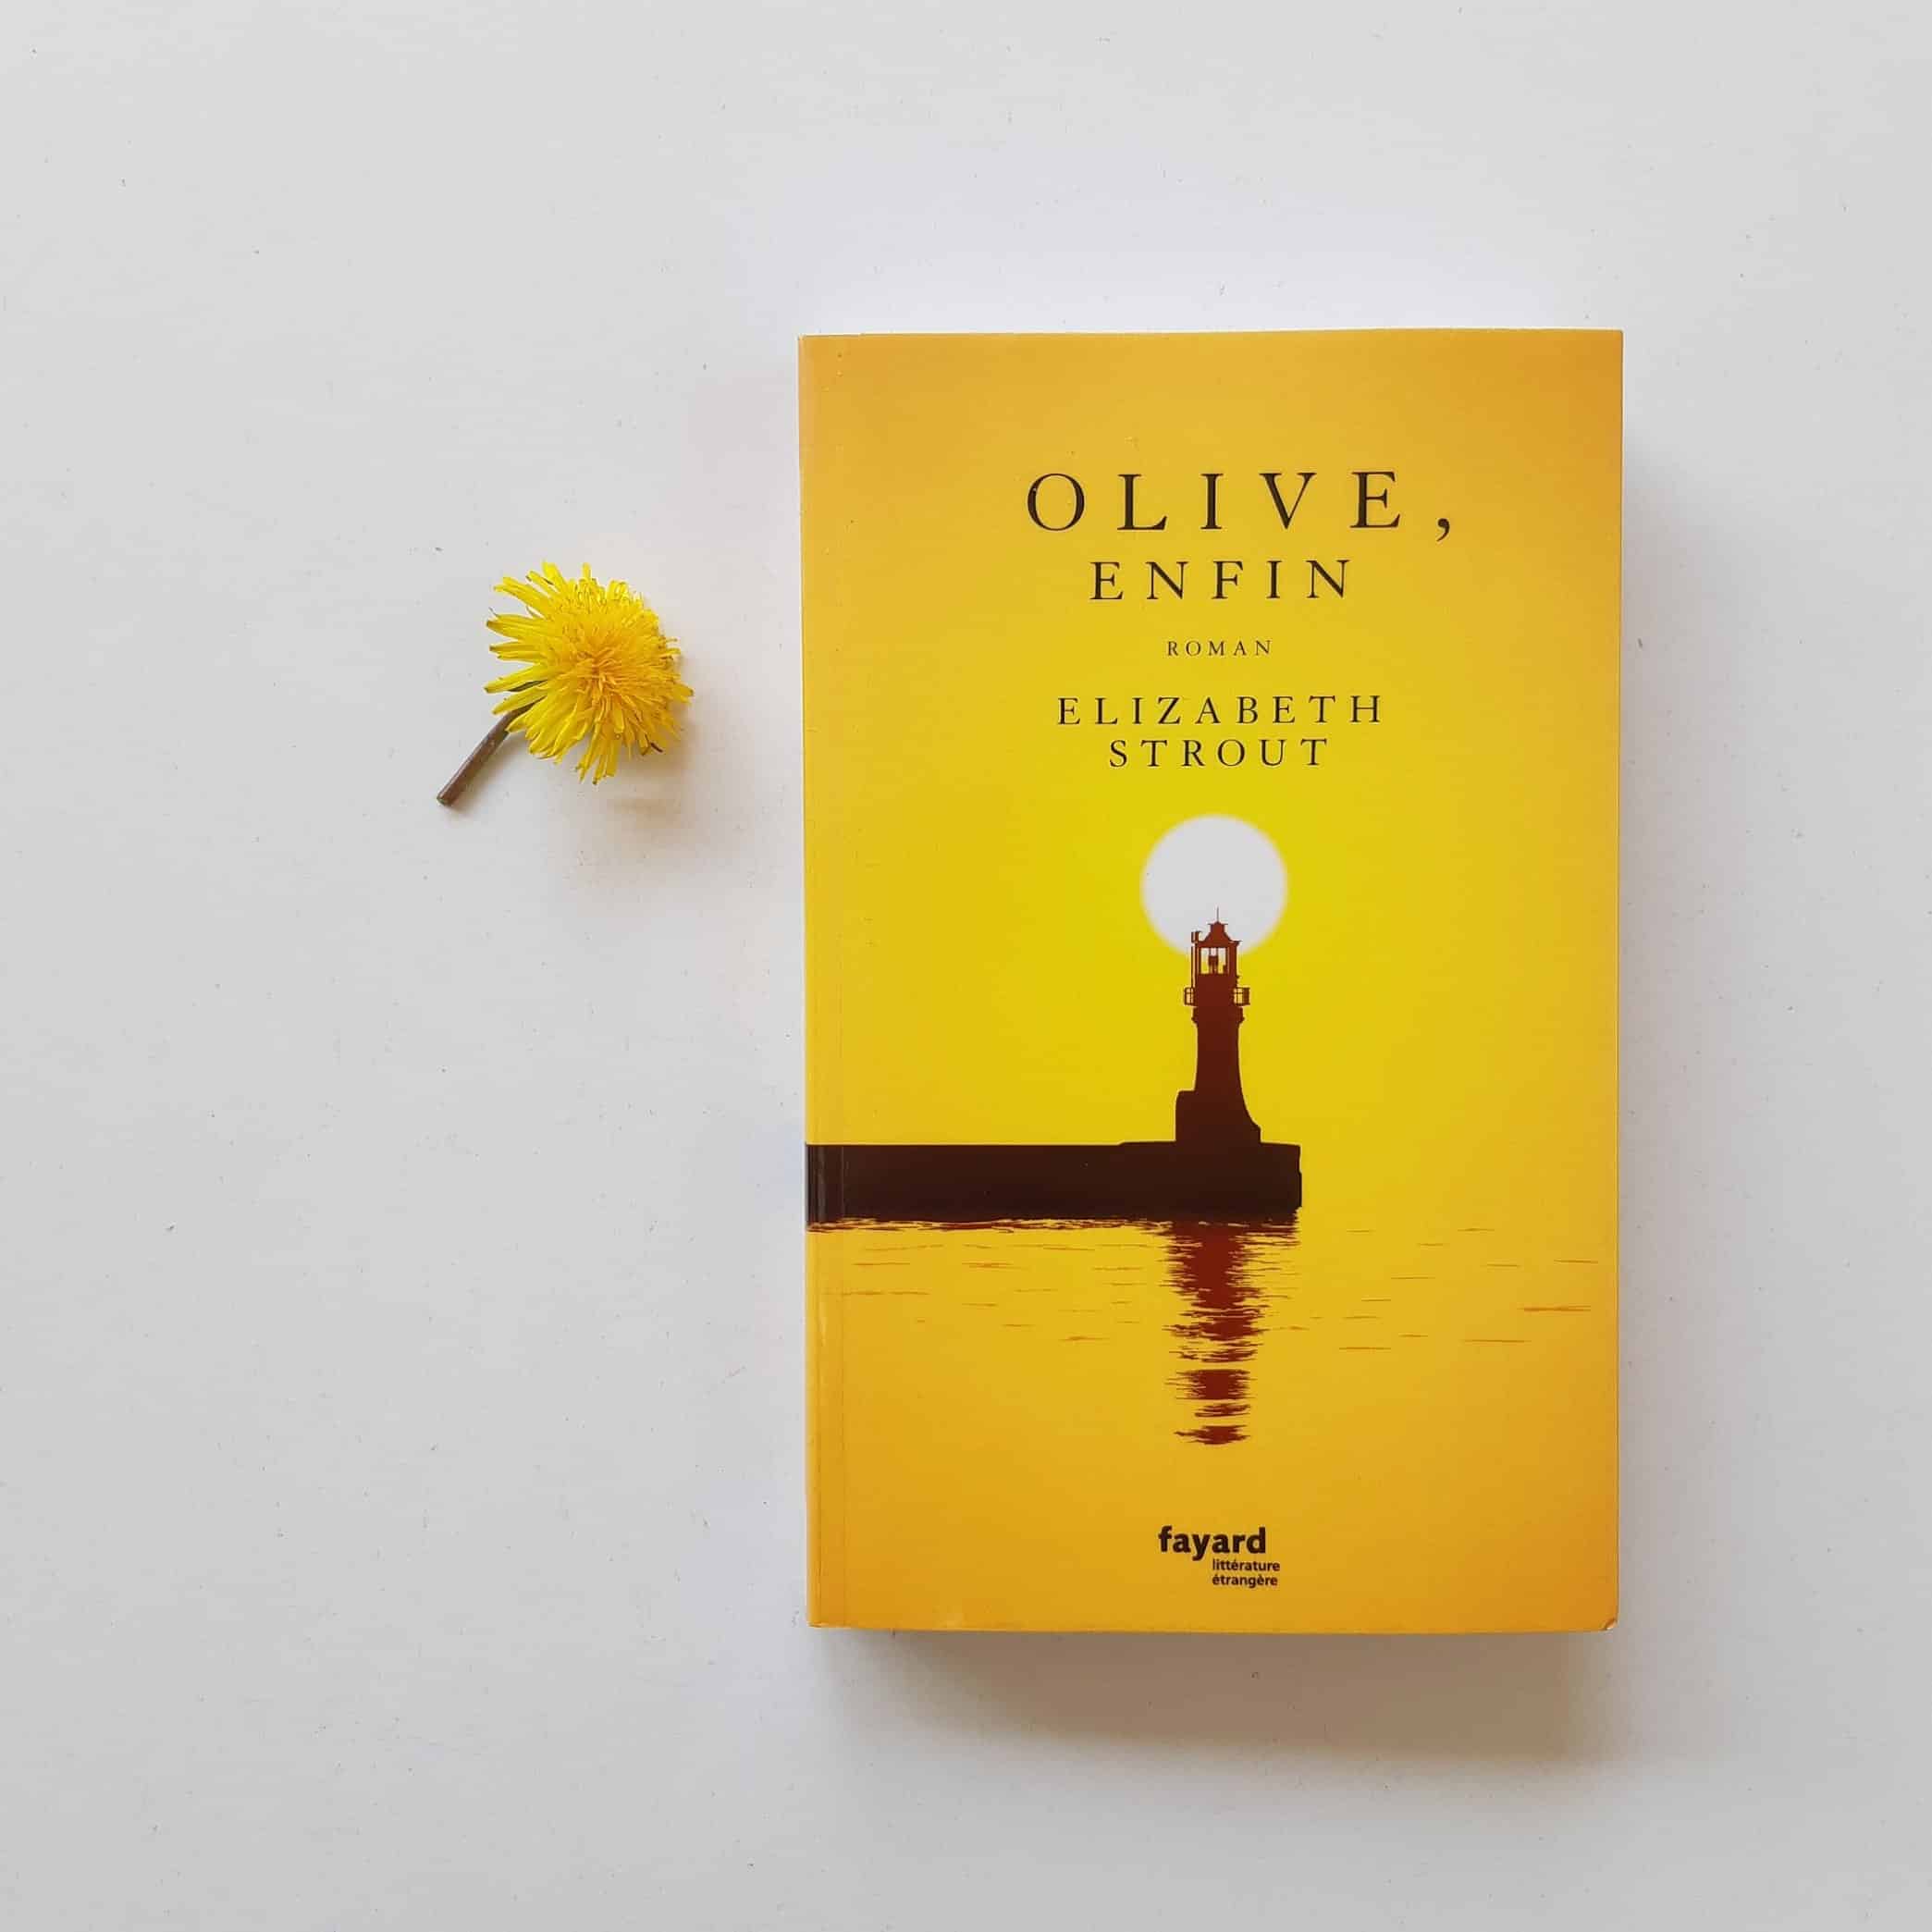 Olive enfin